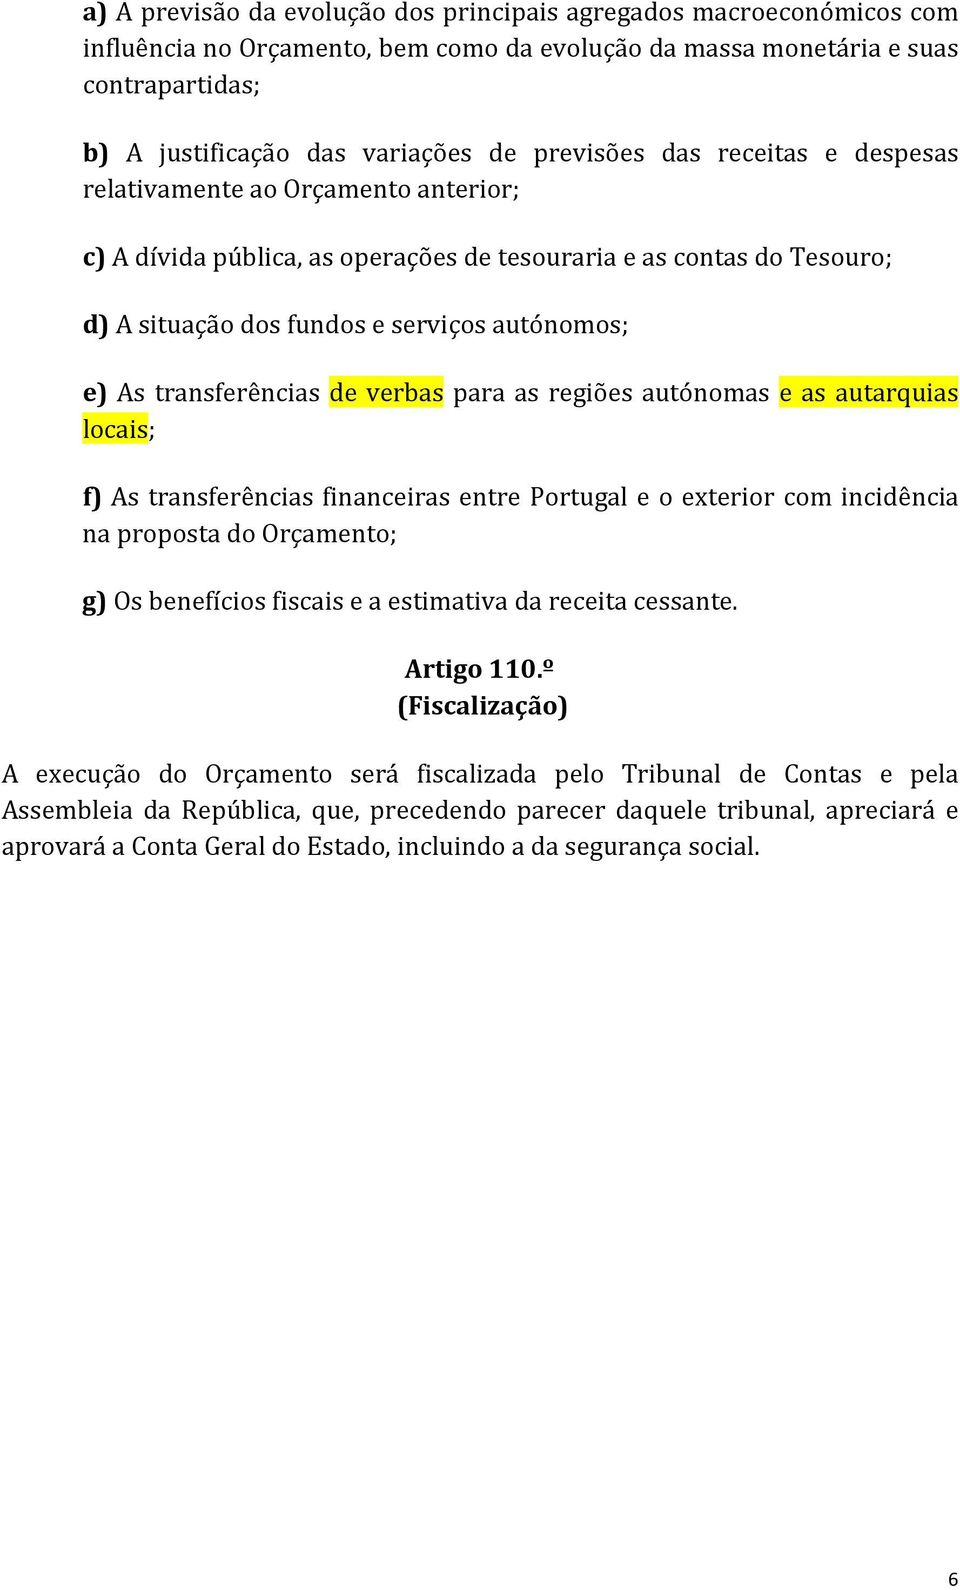 serviços autónomos; e) As transferências de verbas para as regiões autónomas e as autarquias locais; f) As transferências financeiras entre Portugal e o exterior com incidência na